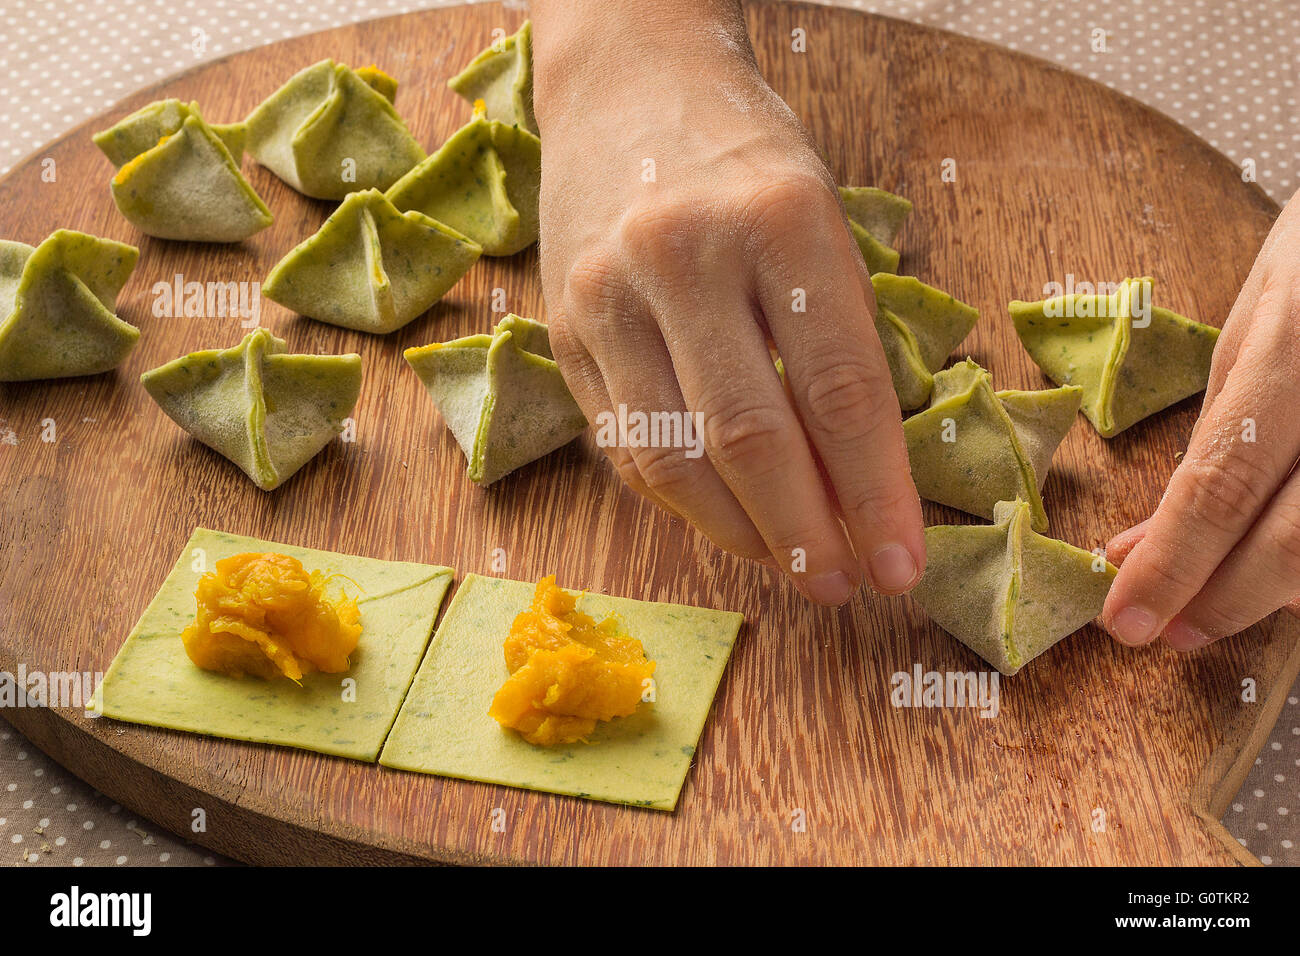 La donna la preparazione di zucca ripieni di pasta saccottini Foto Stock